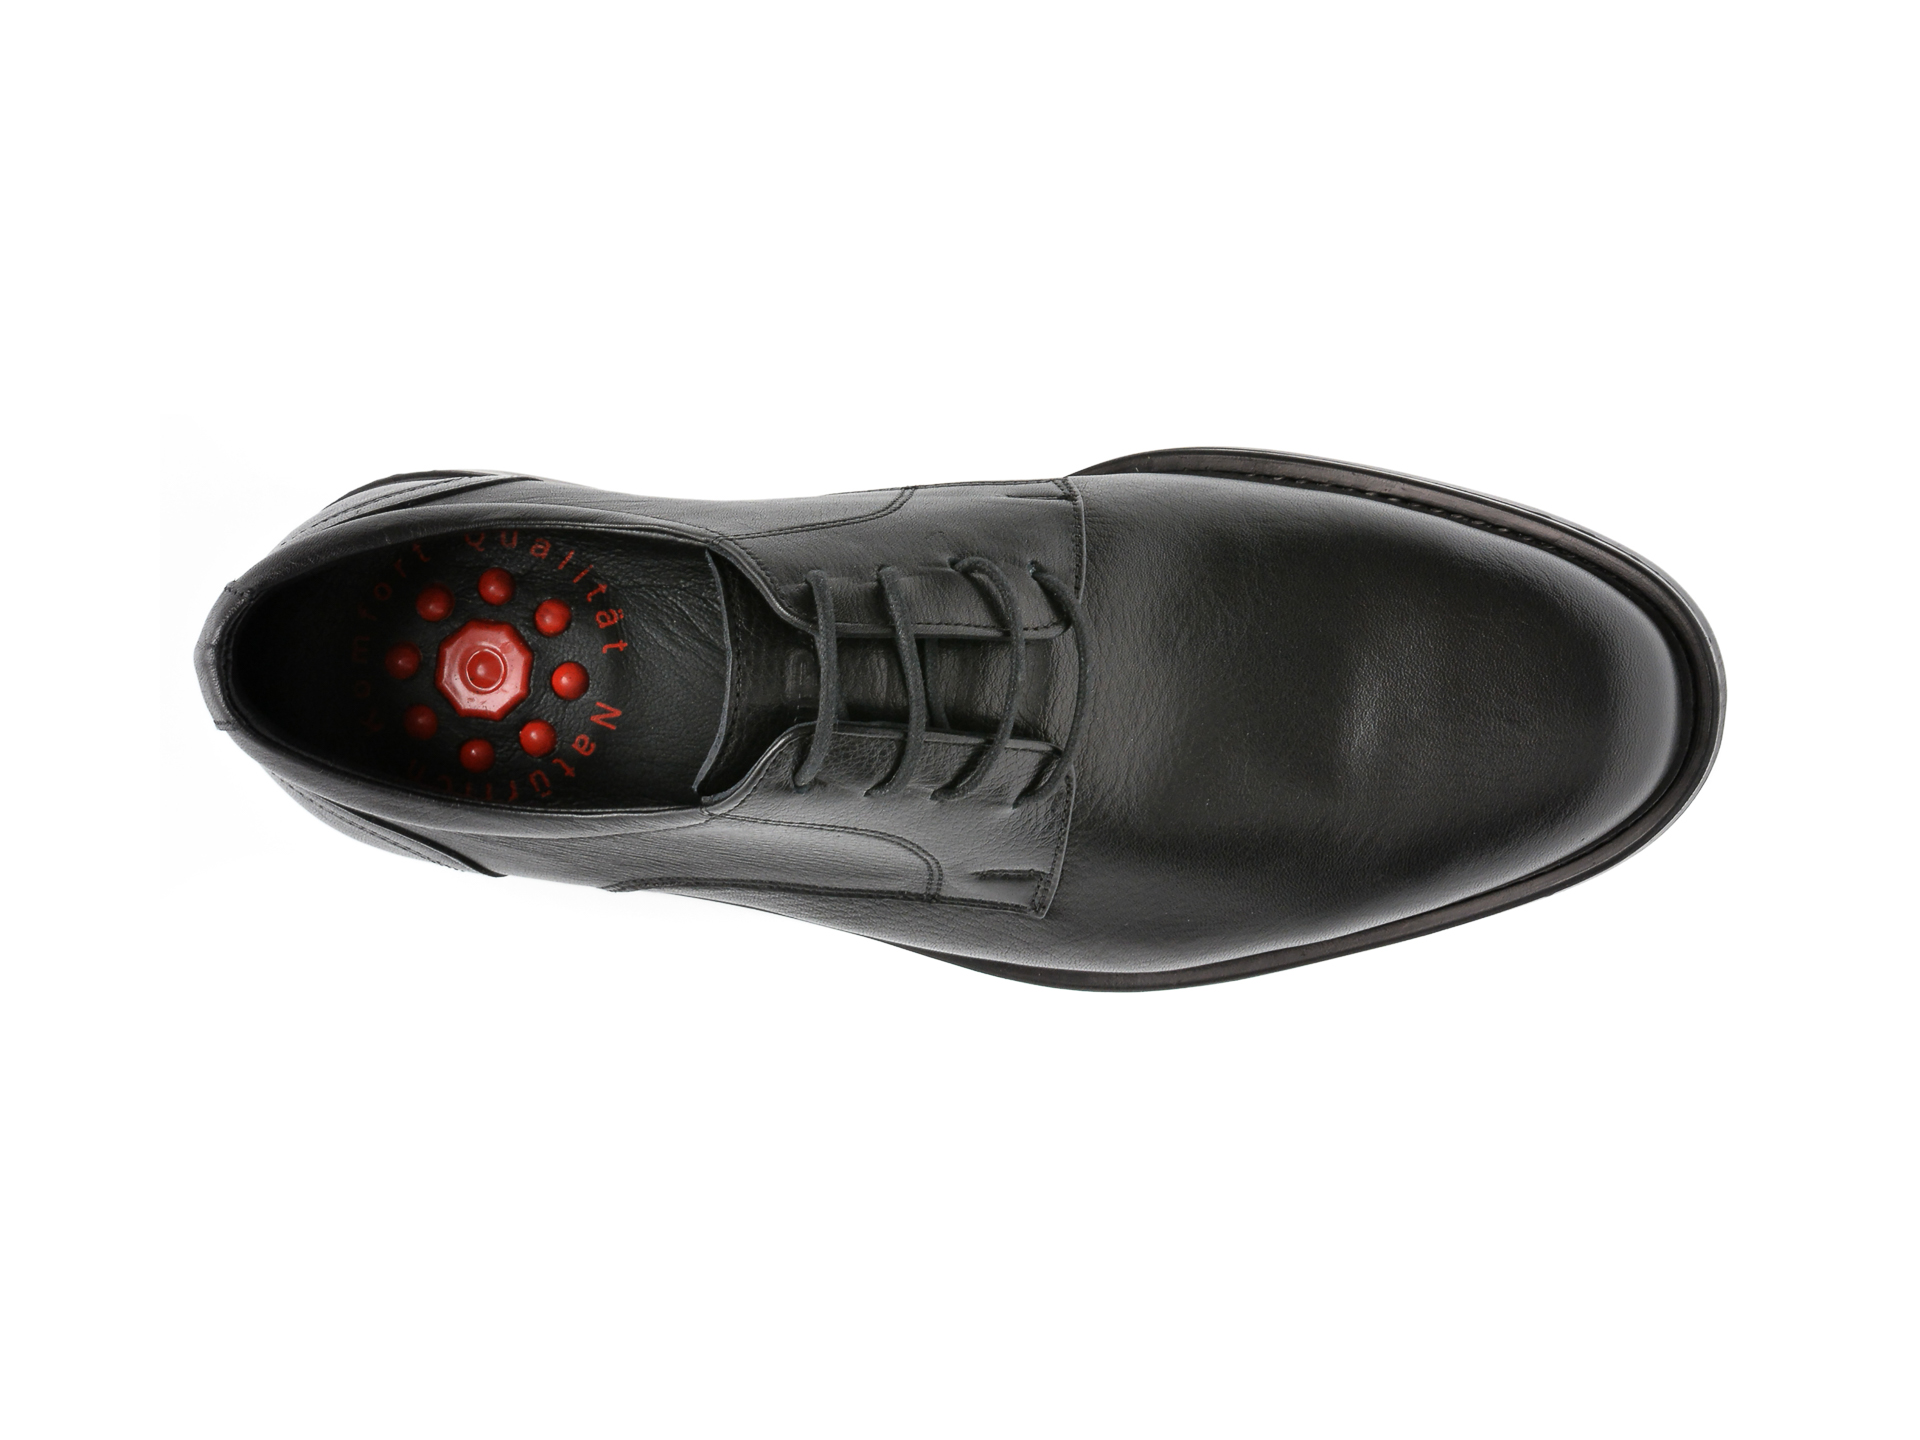 Poze Pantofi OTTER negri, 2382, din piele naturala tezyo.ro